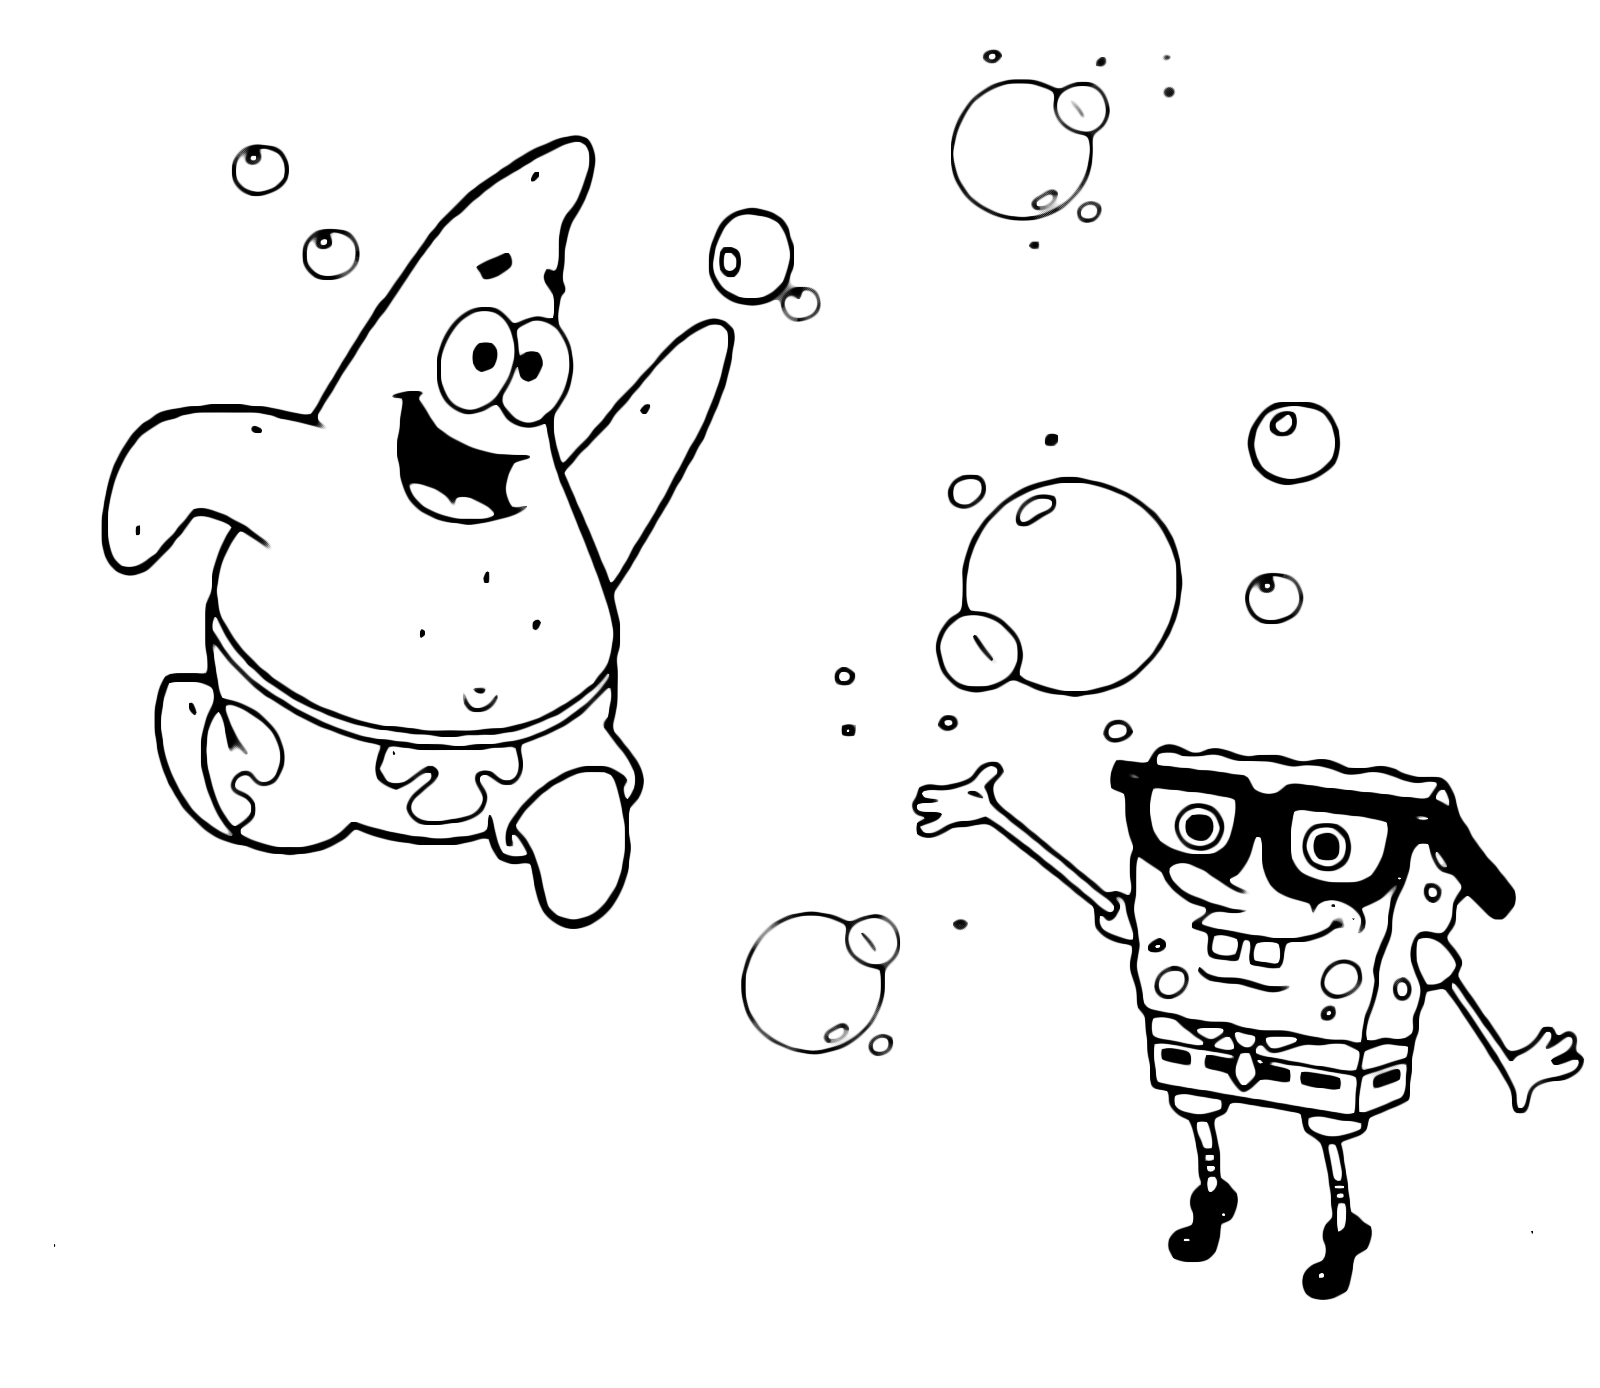 Patrick Stella corre verso SpongeBob che indossa un paio di occhiali